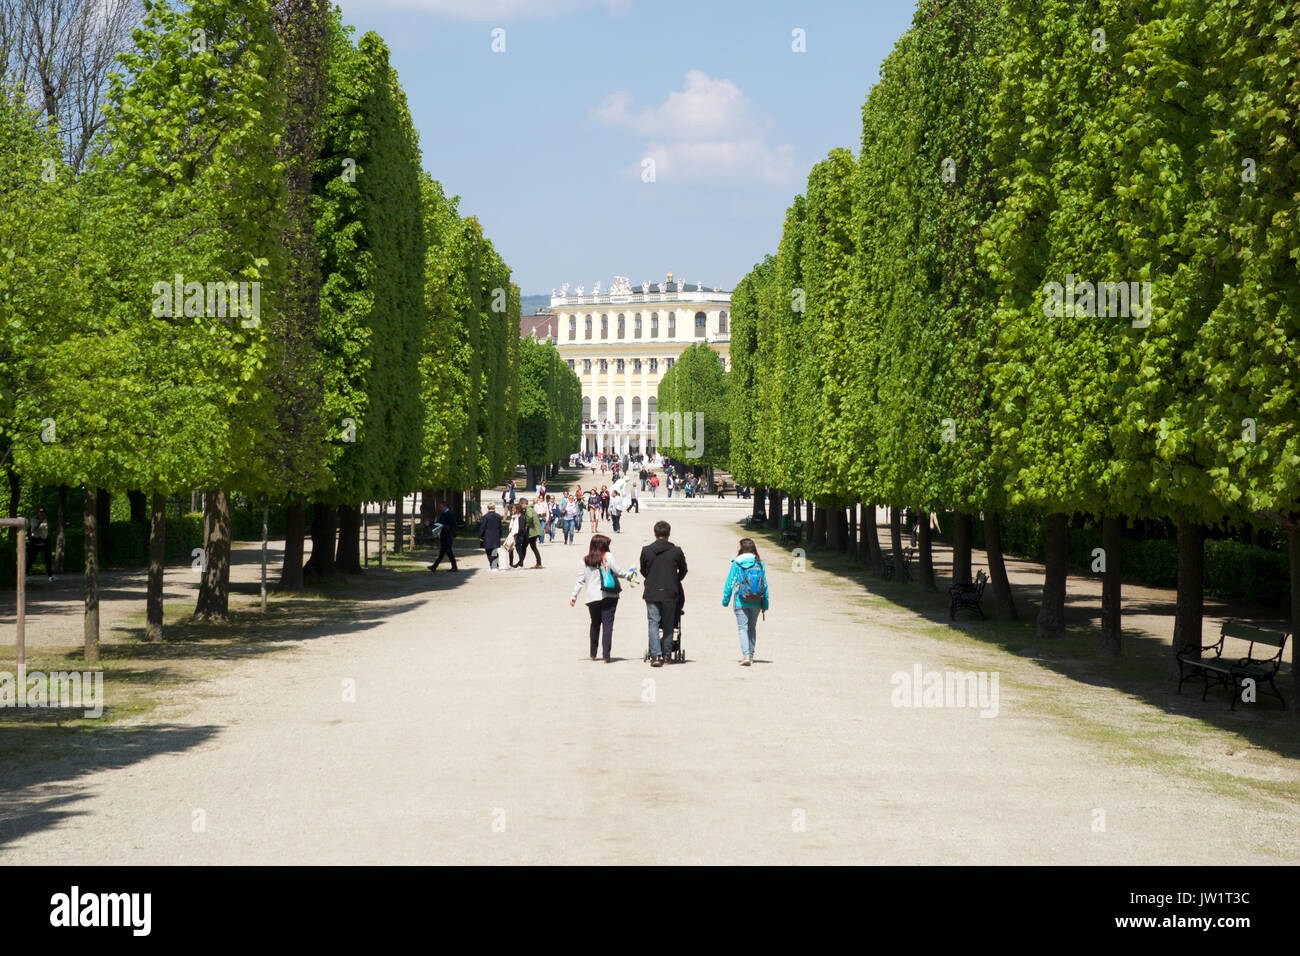 Vienne, AUTRICHE - avril 30th, 2017 : parc public à Schonbrunn. C'est un ancien imperial 1441 Rococo-résidence d'été de Sissi l'Impératrice Elisabeth d'Autriche à Vienne moderne. Balades touristiques dans le parc Banque D'Images